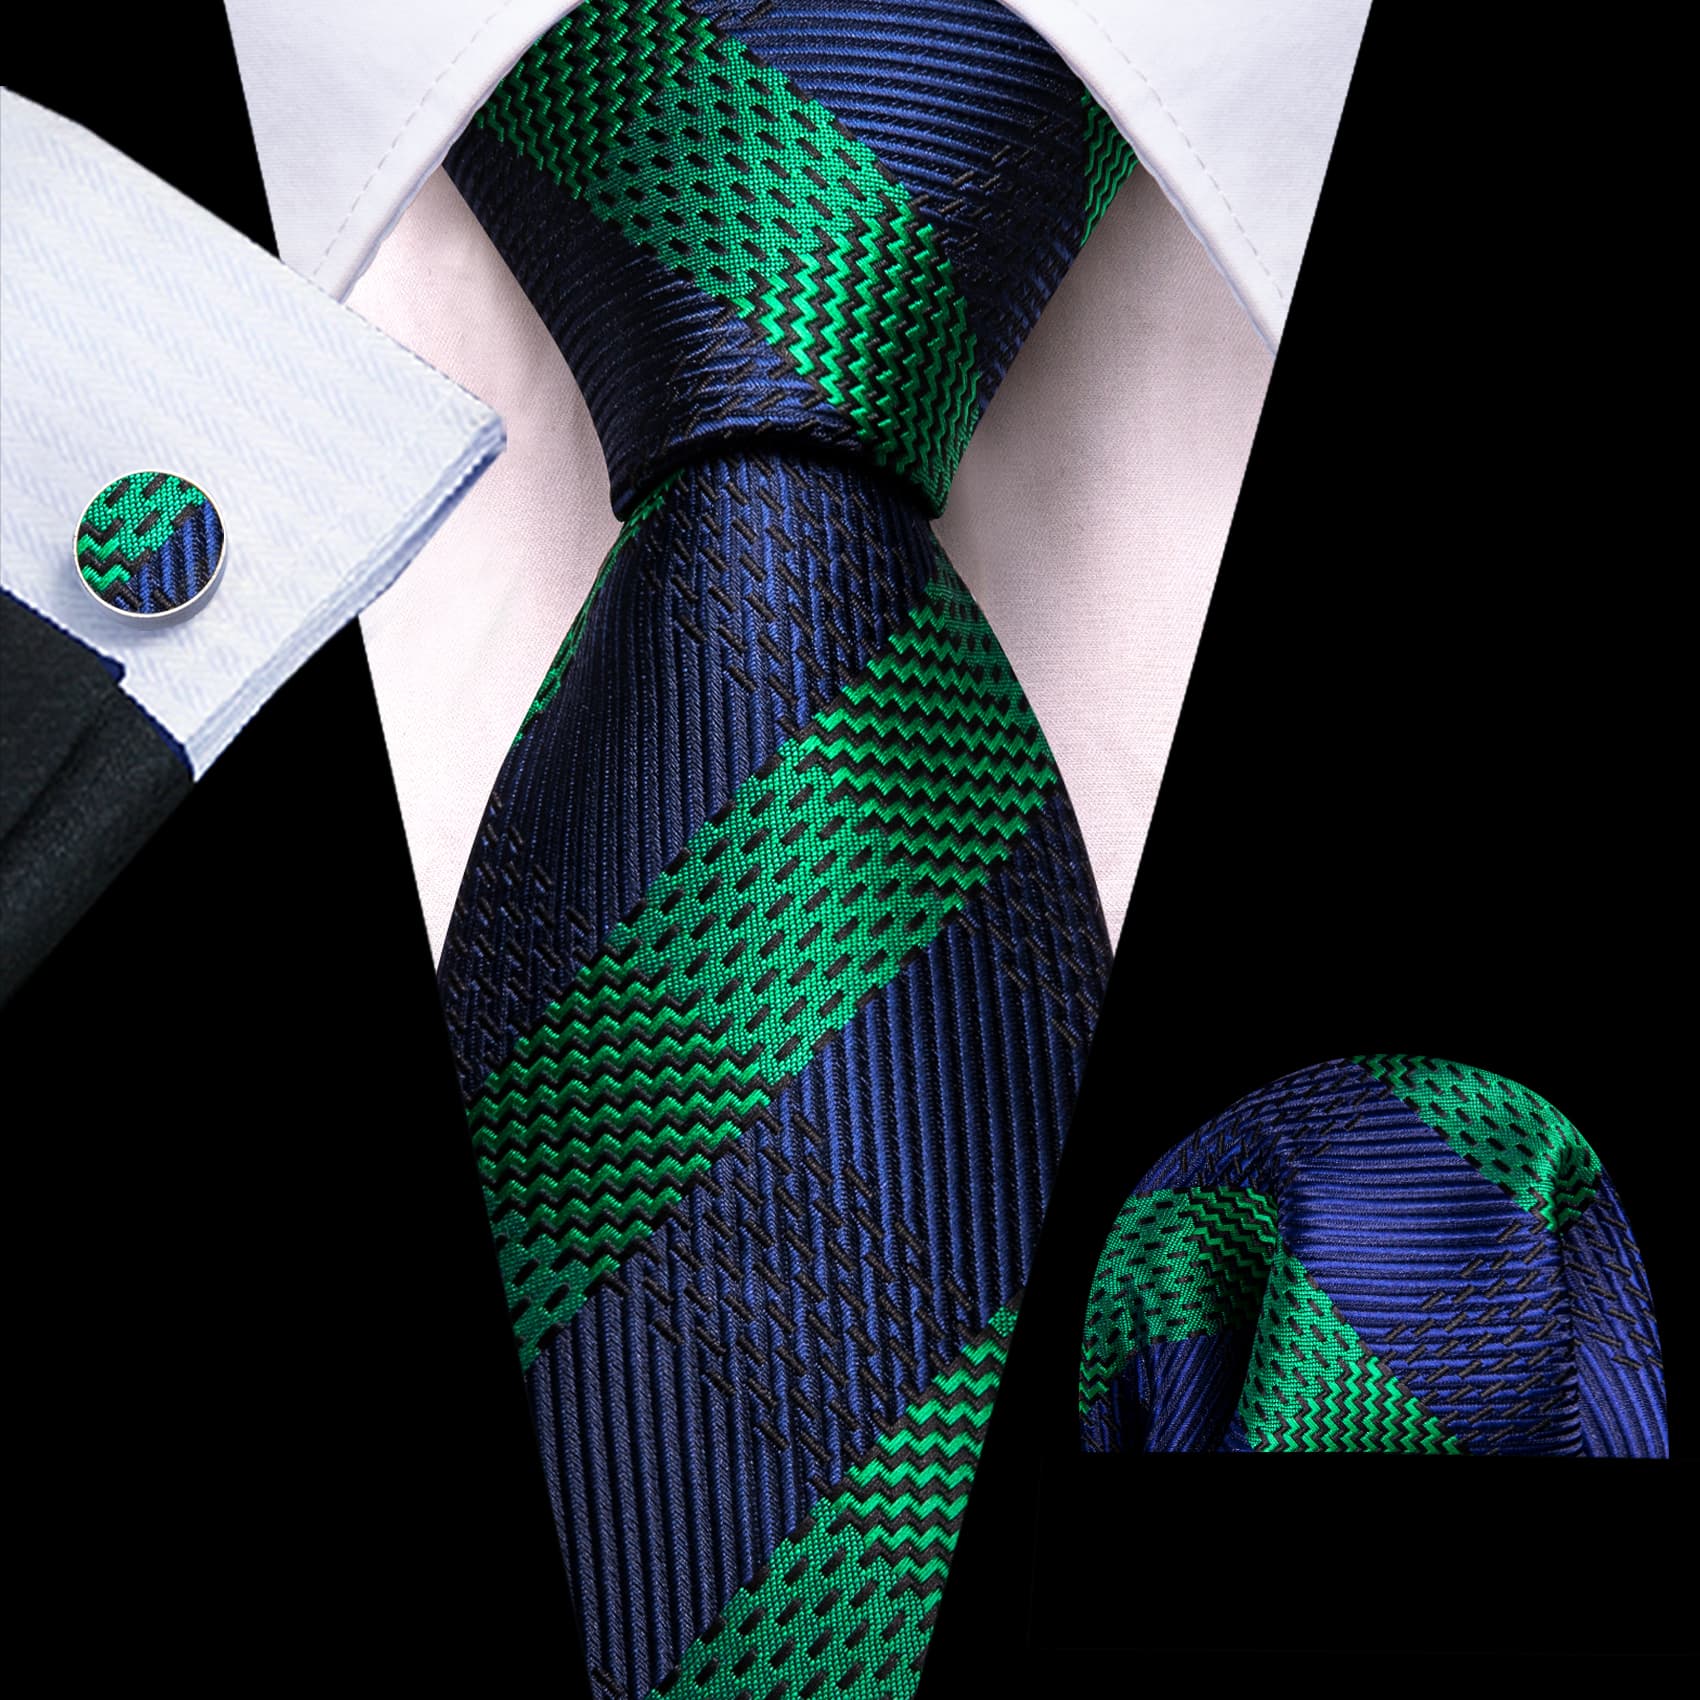  Mens Tie Striped Black Green Necktie Hanky Cufflinks Set